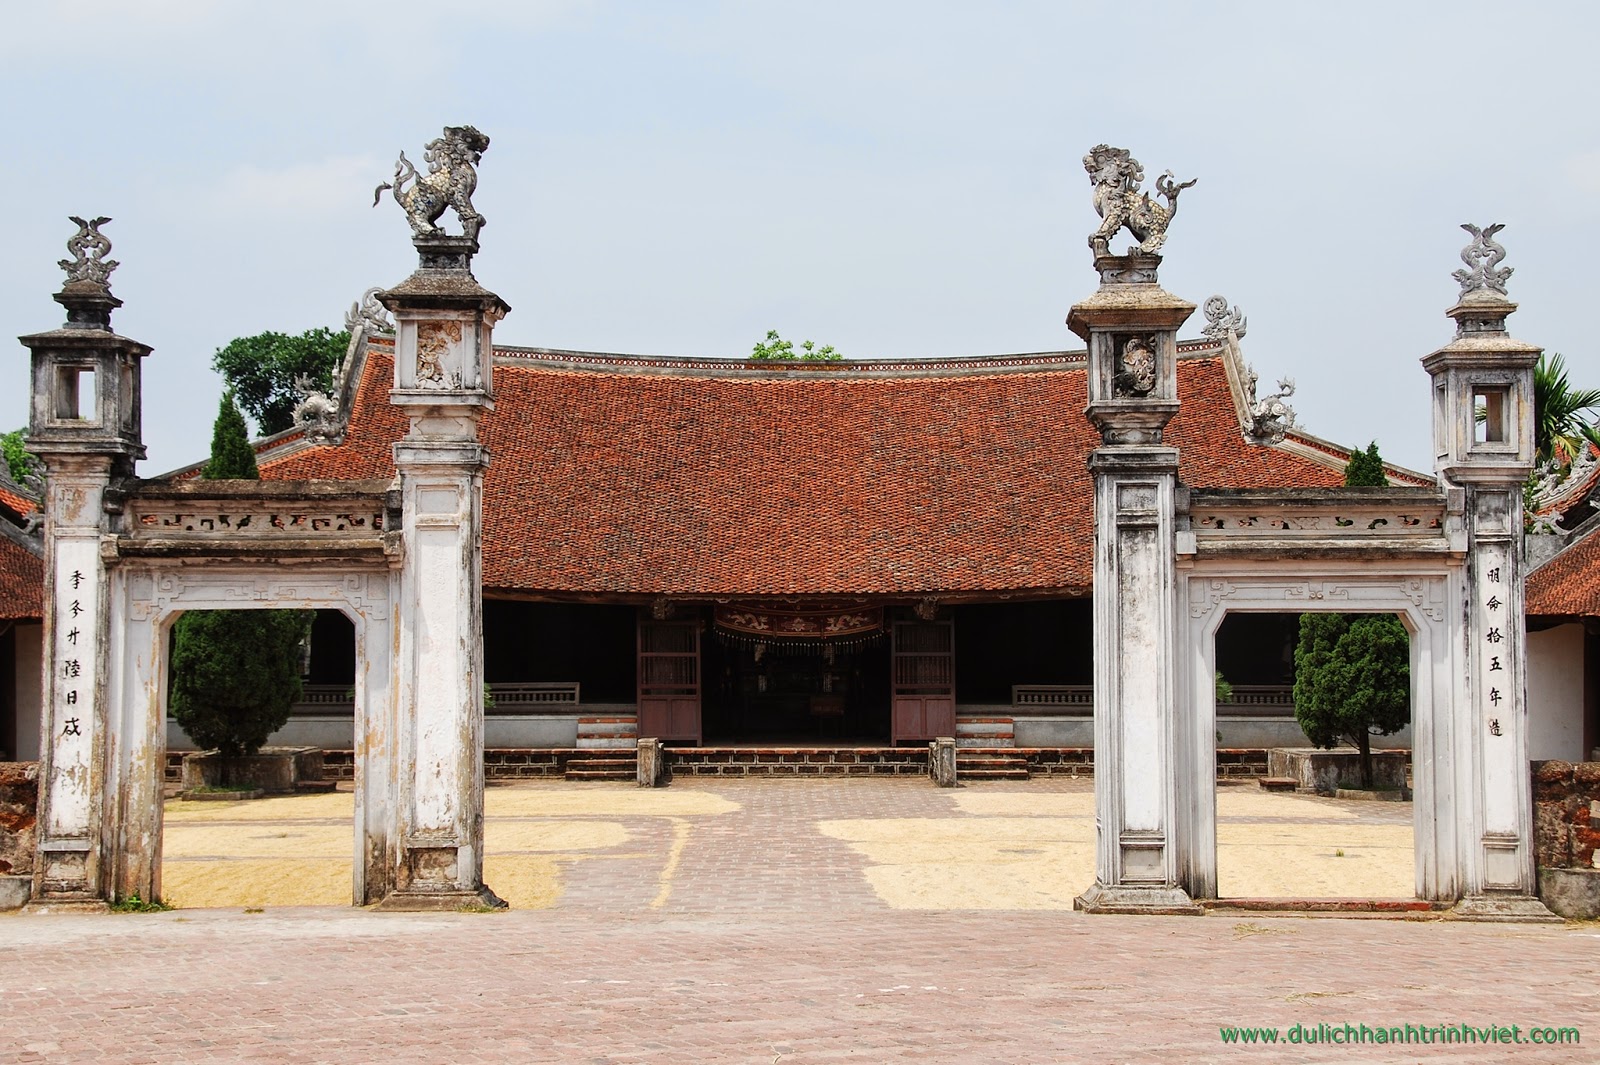 Ancient village de Duong Lam, Hanoi